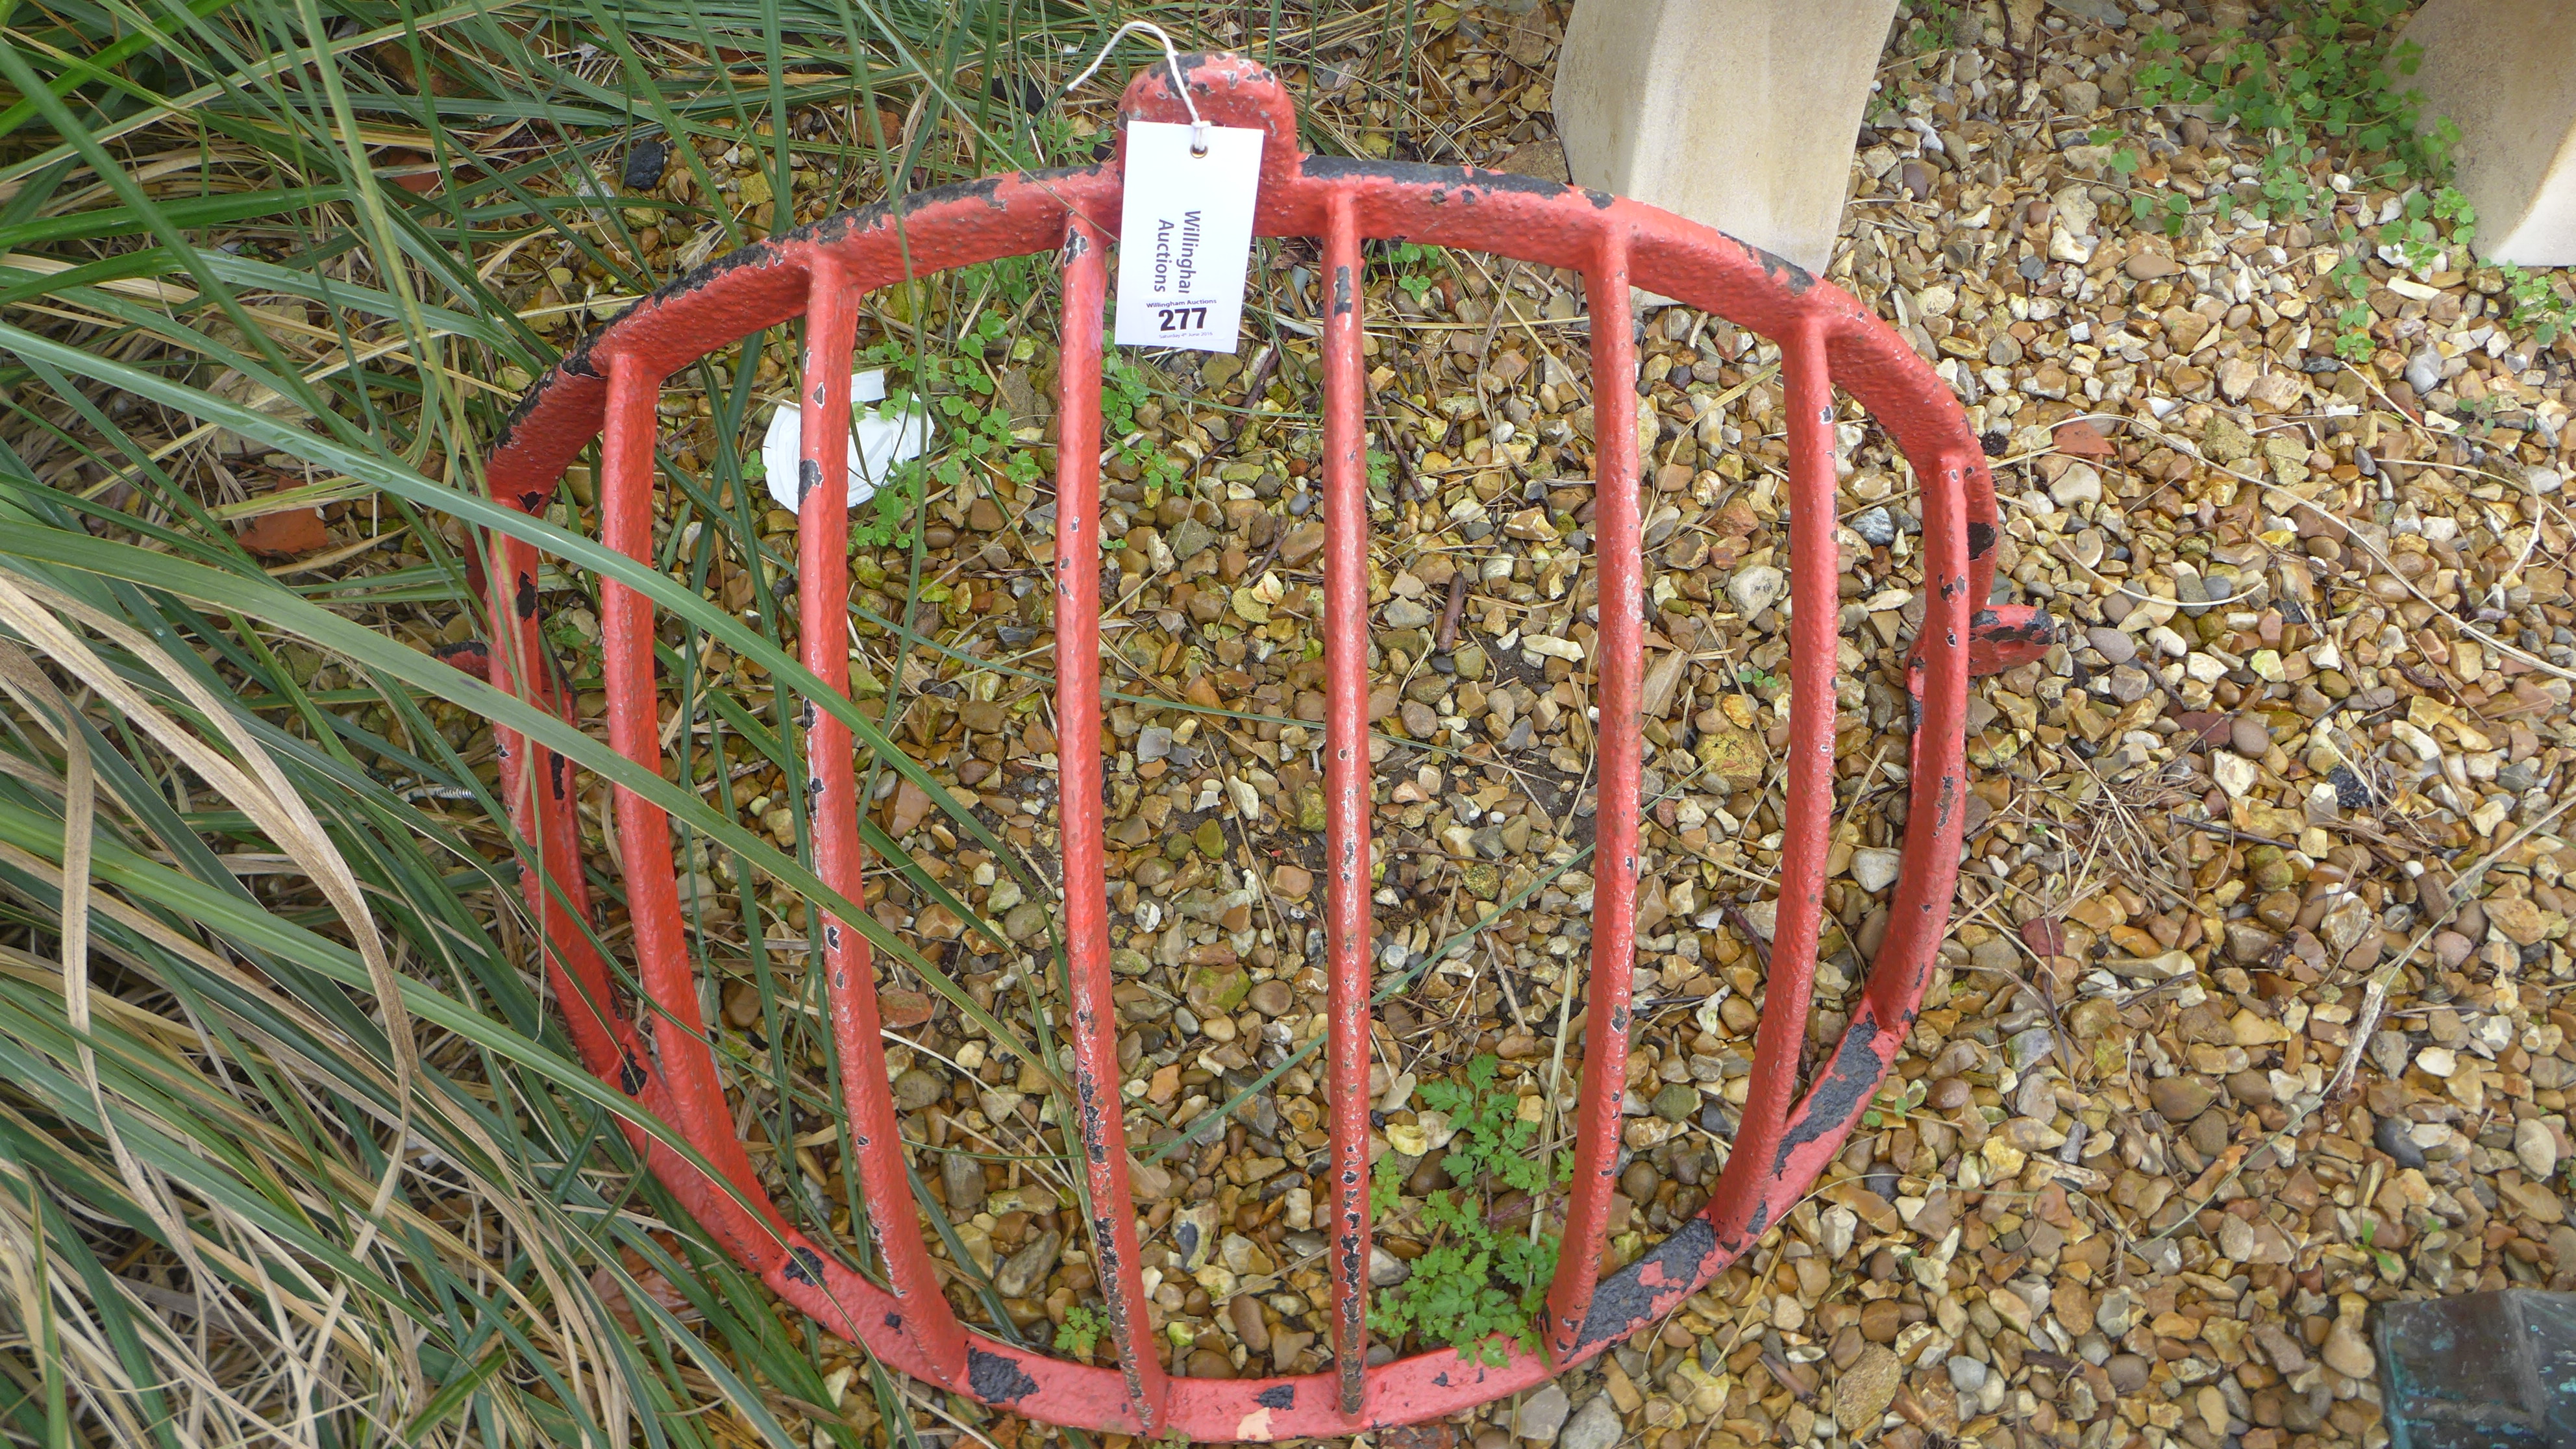 A cast iron hay feeder - Width 92cm